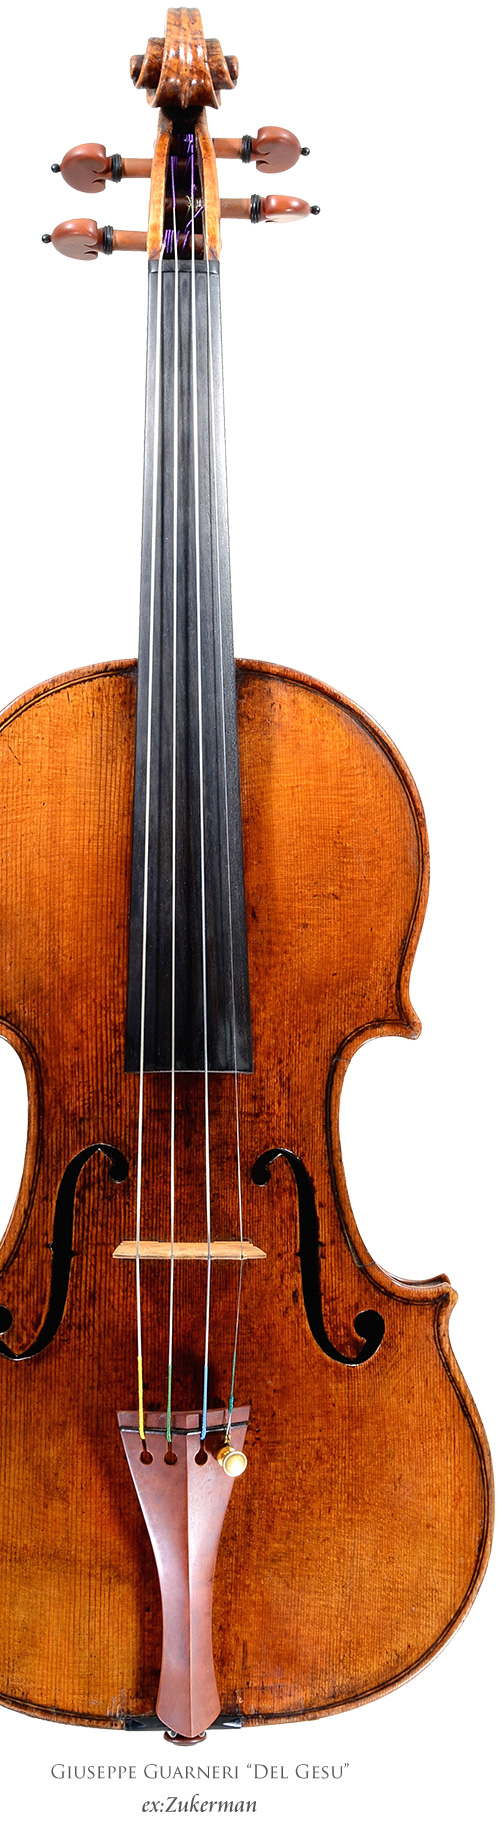 弦楽器専門店 ラルジュ ー販売 鑑定 修理 調整 買取ー バイオリン ビオラ チェロ 弓